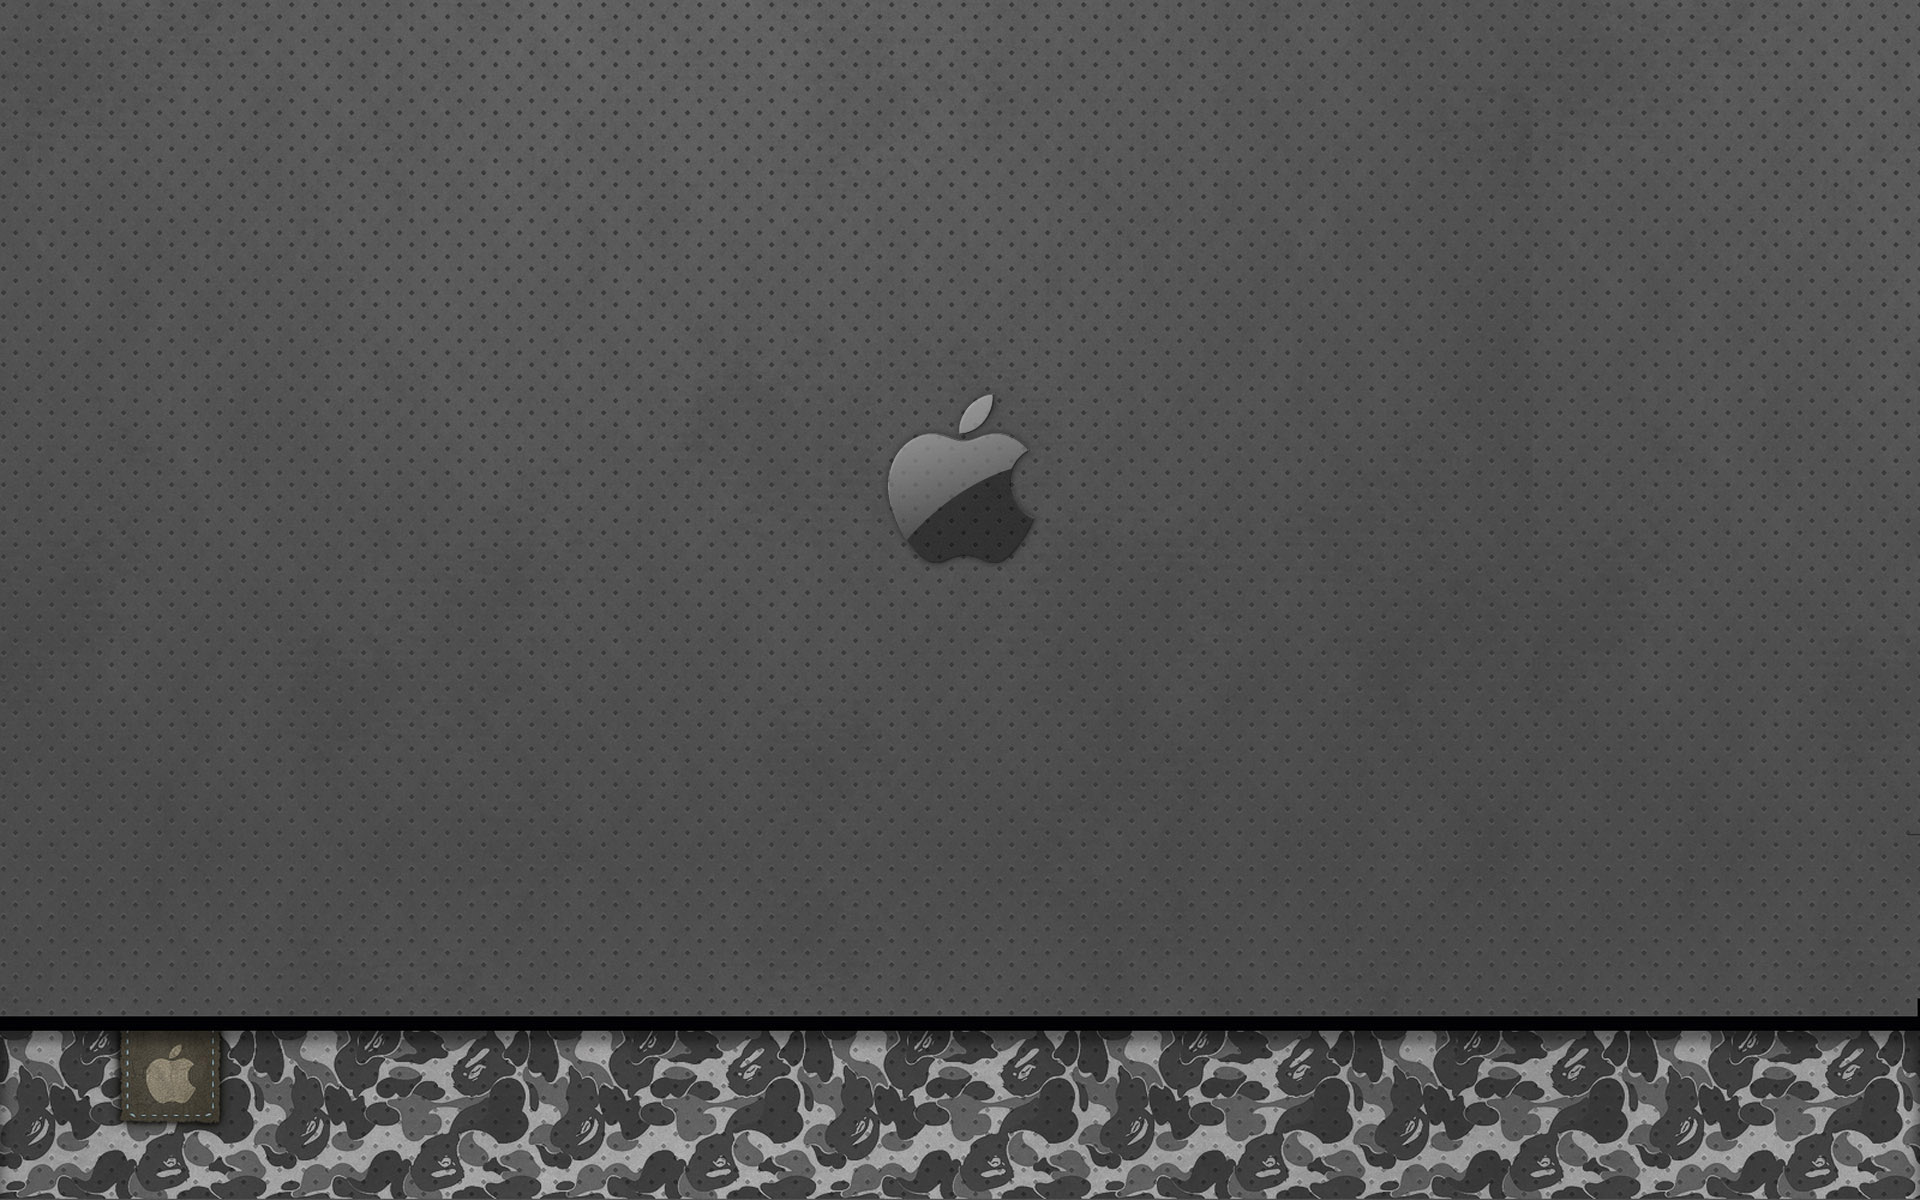 壁纸1920x1200Apple主题 42 3壁纸 Apple主题壁纸 Apple主题图片 Apple主题素材 系统壁纸 系统图库 系统图片素材桌面壁纸